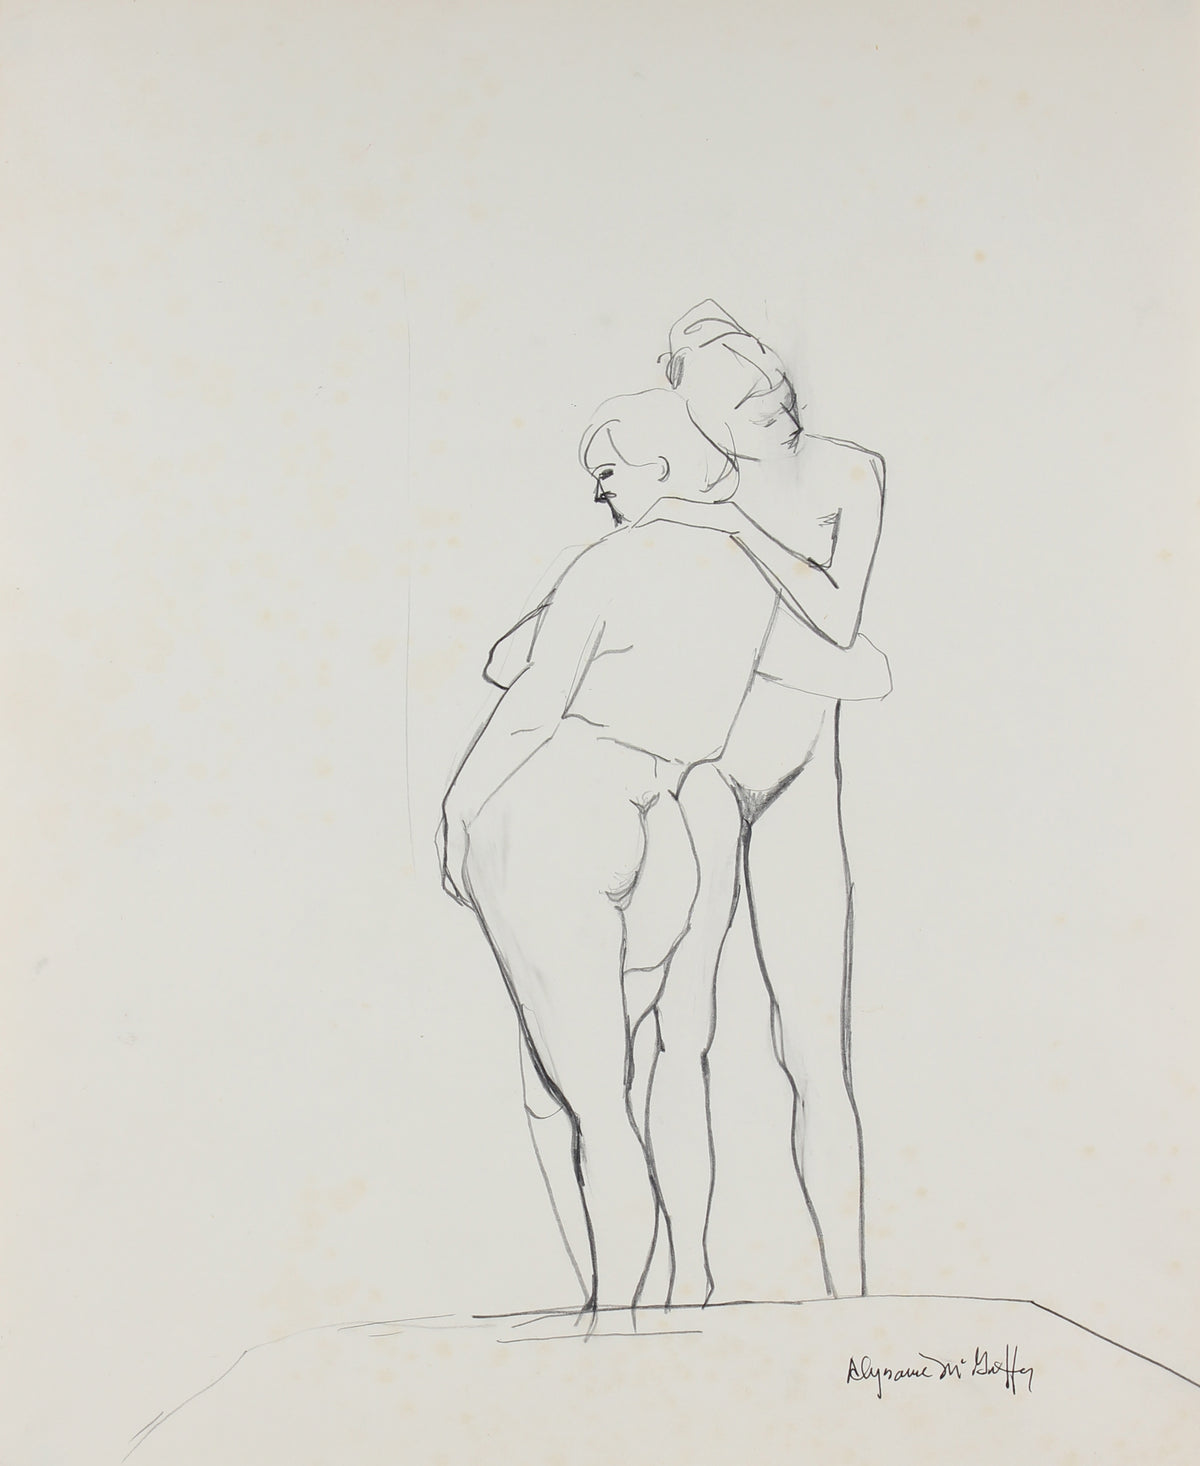 Nude Figures Embracing &lt;br&gt;1950-60s Charcoal &amp; Graphite &lt;br&gt;&lt;br&gt;#23393